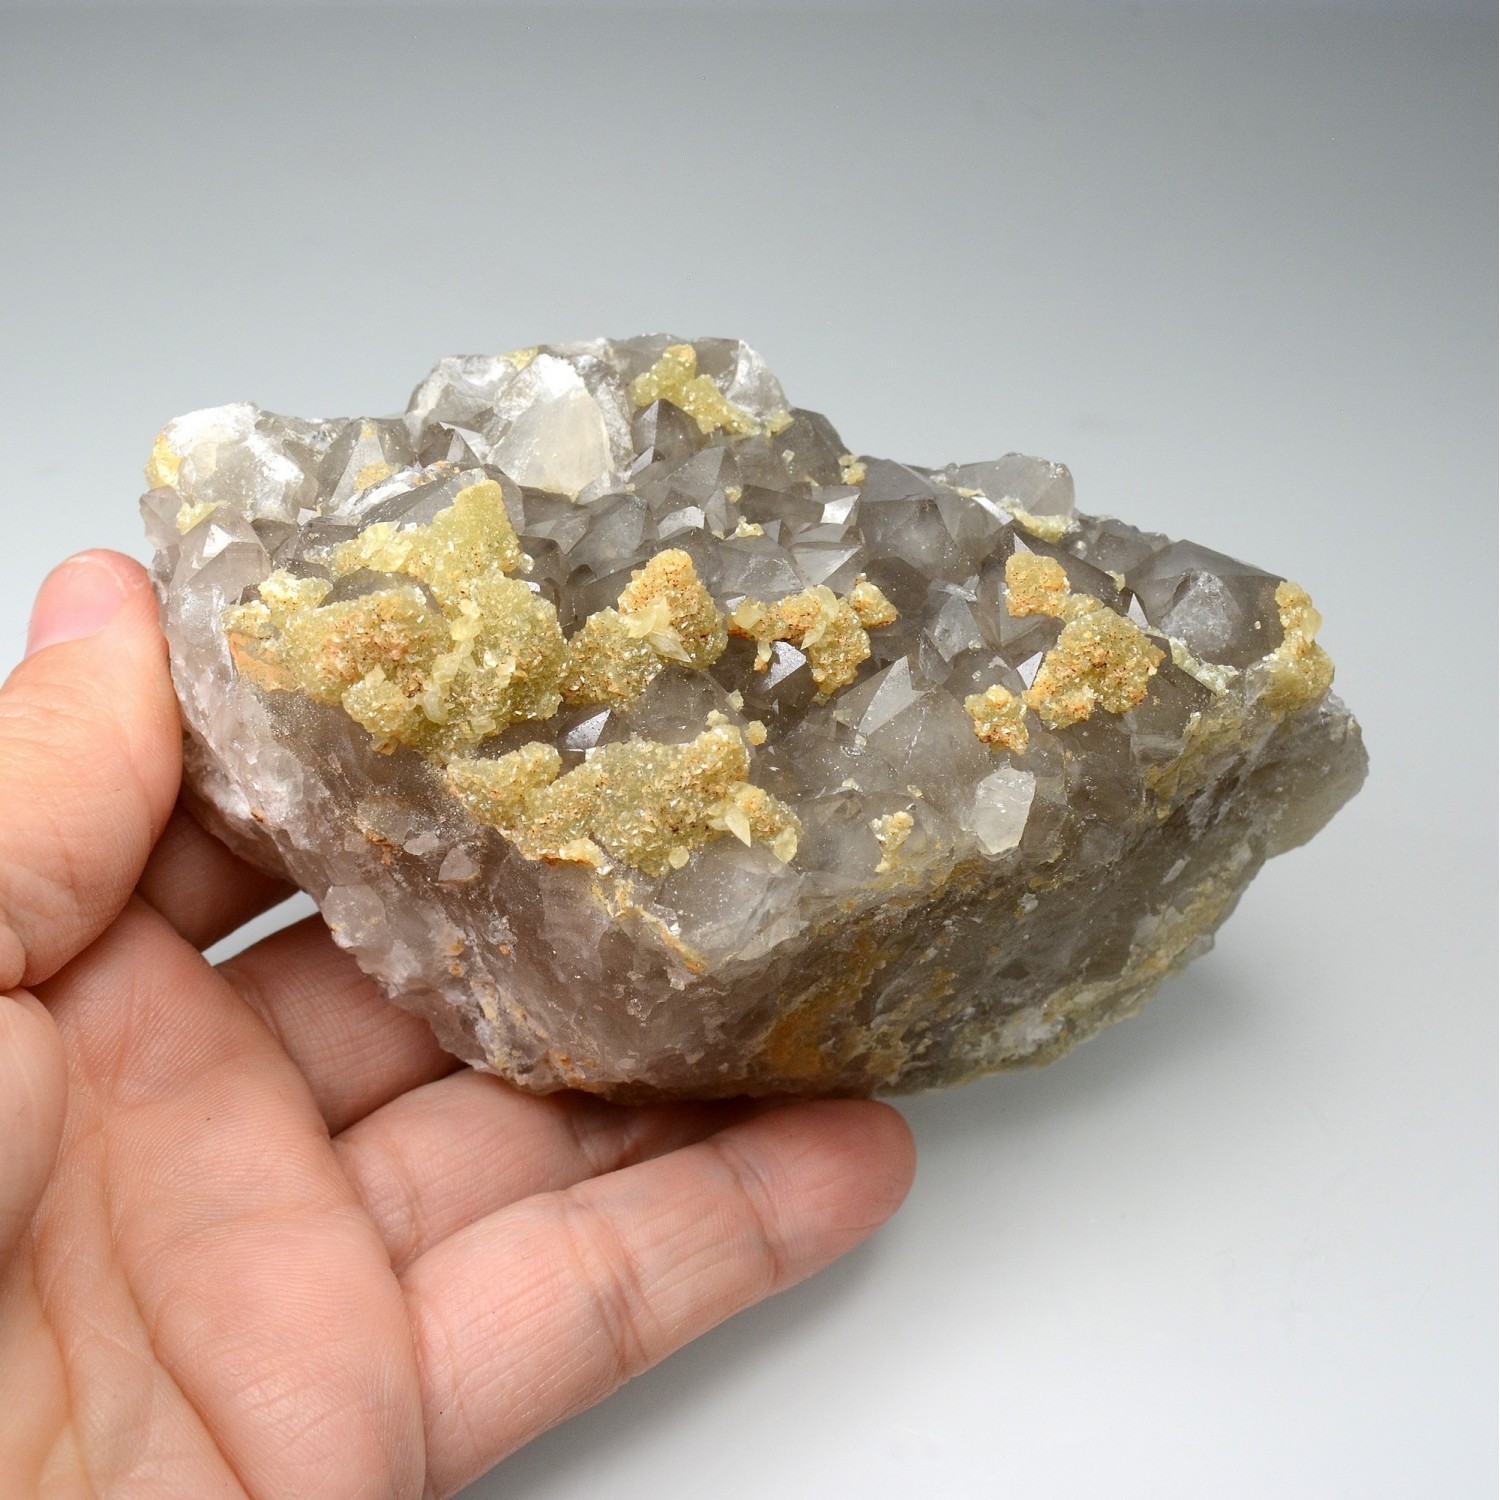 Calcite and siderite on quartz - Laguépie, Tarn-et-Garonne, France